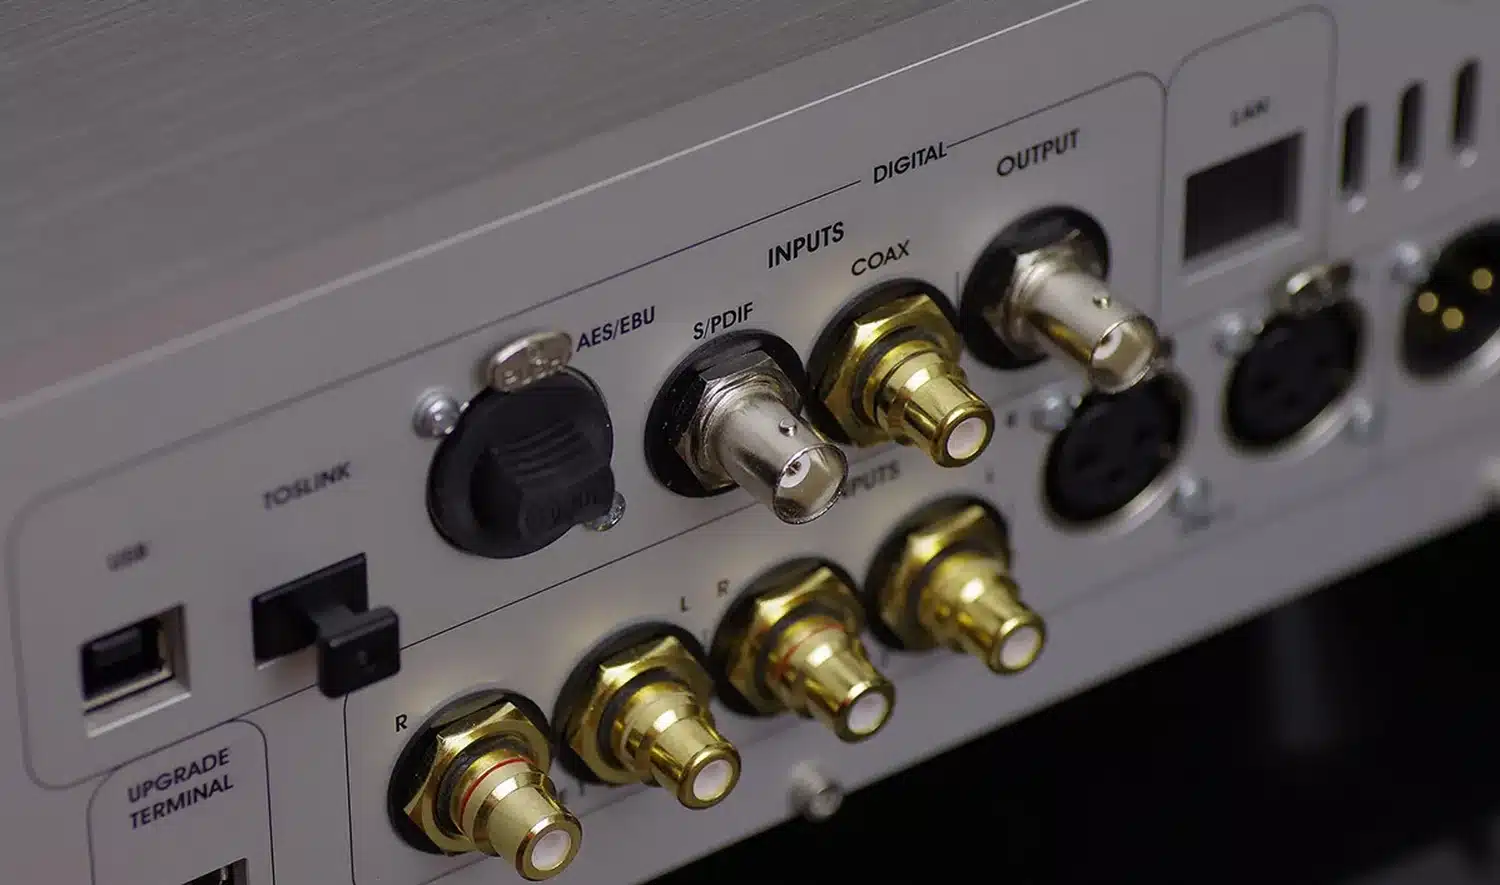 Image en gros plan du panneau arrière du Vermeer Audio Two comportant divers connecteurs d'entrée et de sortie numériques dont aes/ebu, s/pdif et toslink ainsi que des entrées analogiques (par 1877.audio)